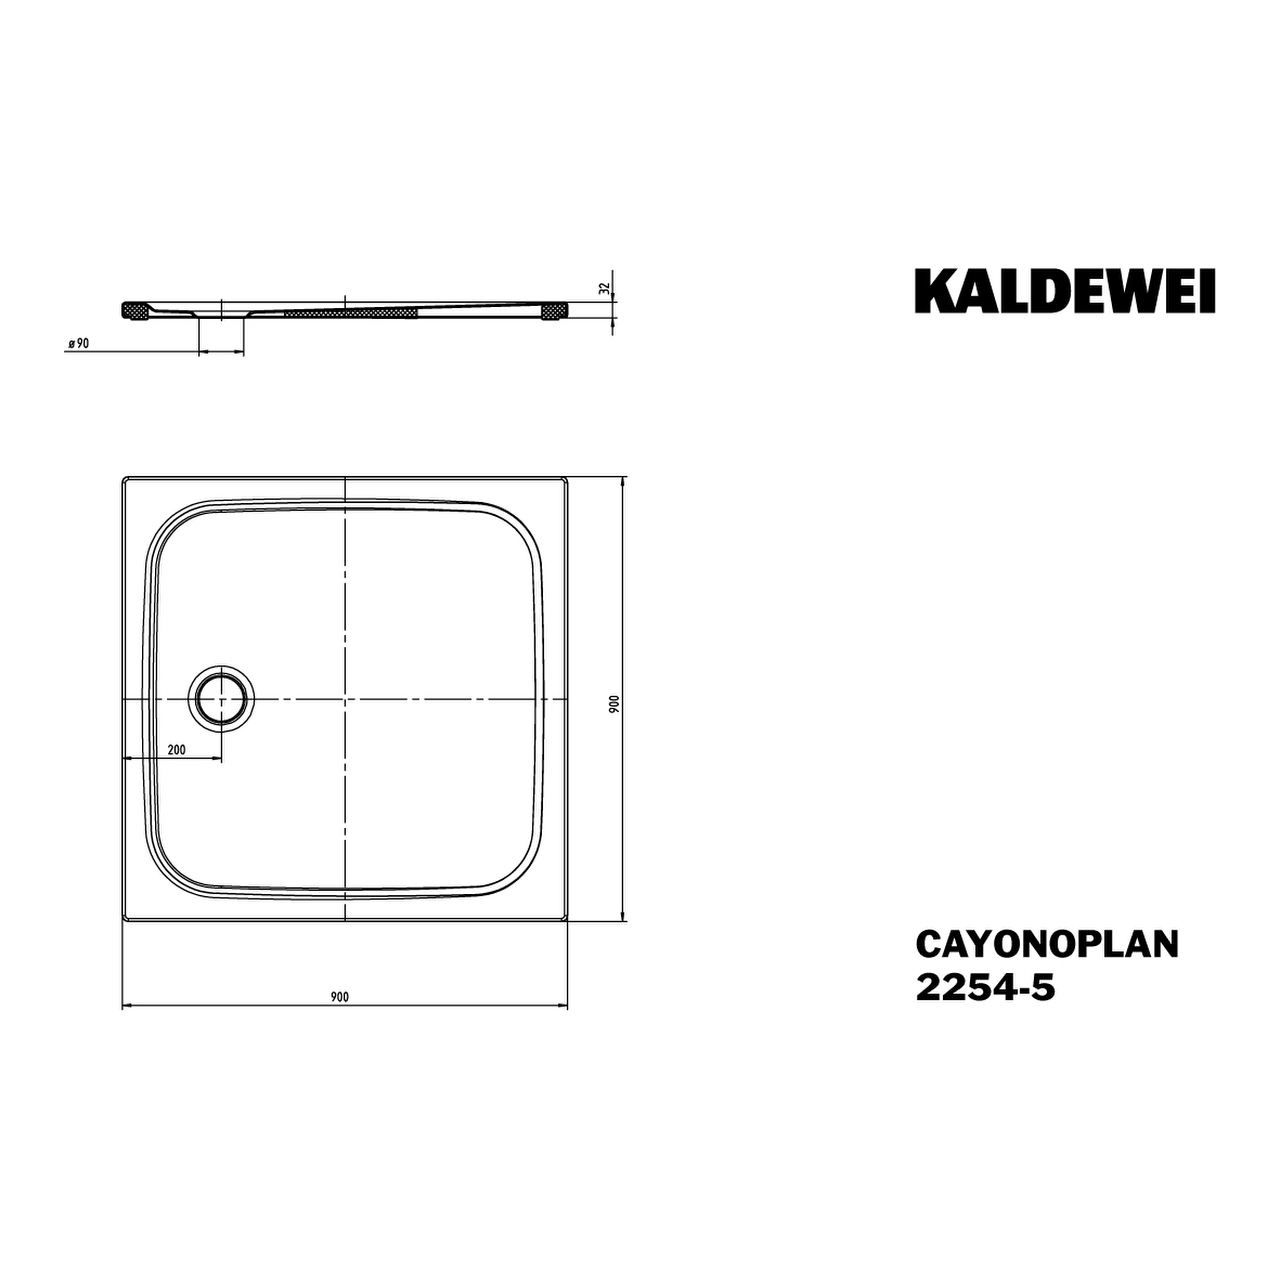 Kaldewei quadrat Duschwanne „Cayonoplan“ 90 × 90 cm in warm grey 60